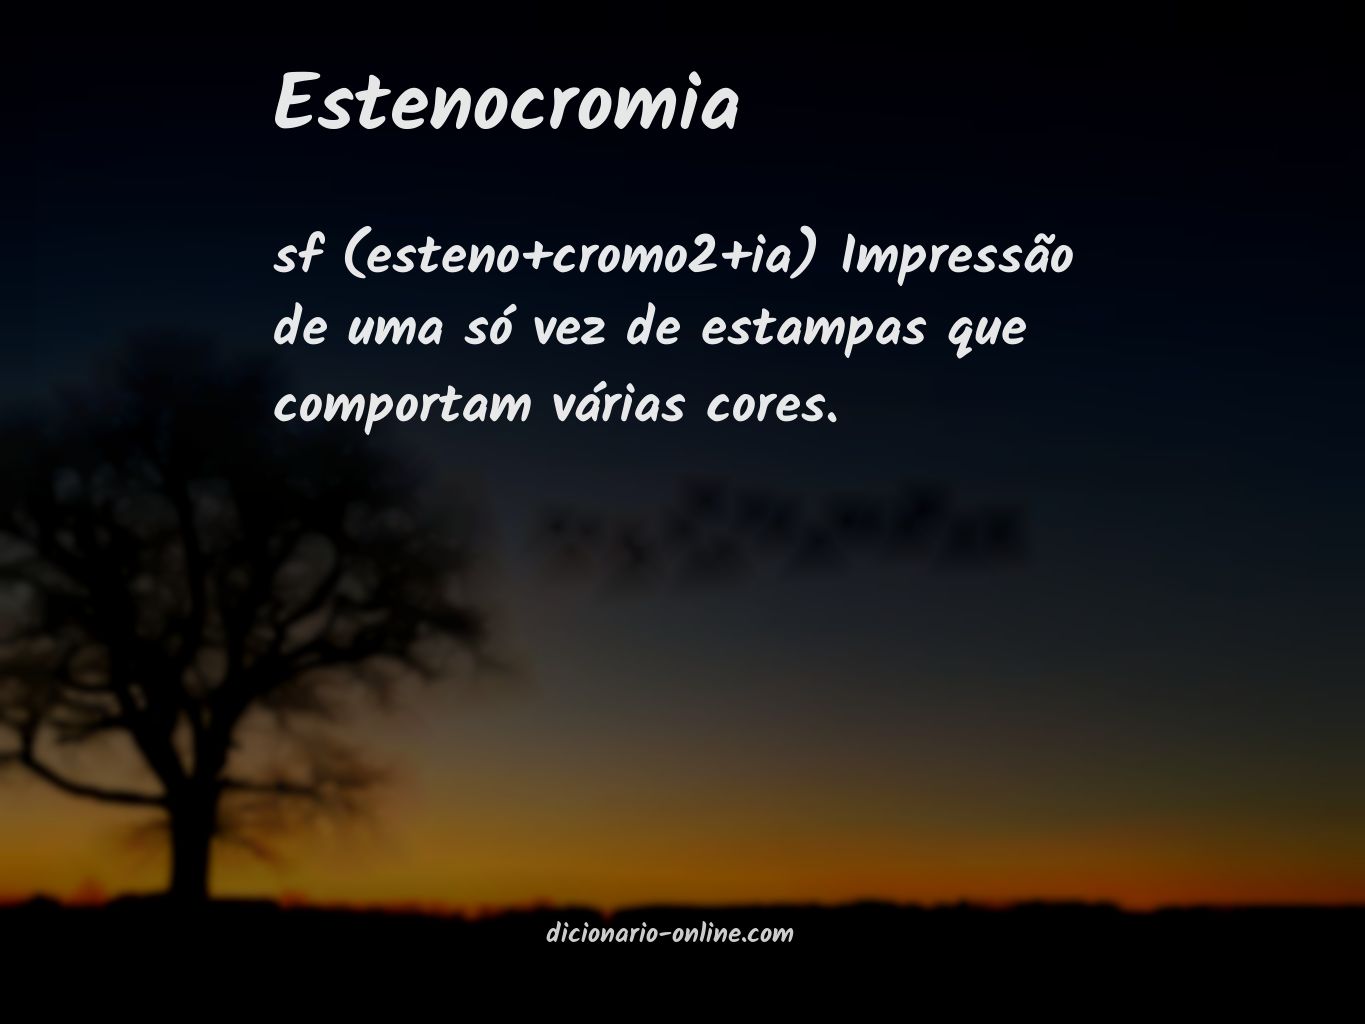 Significado de estenocromia